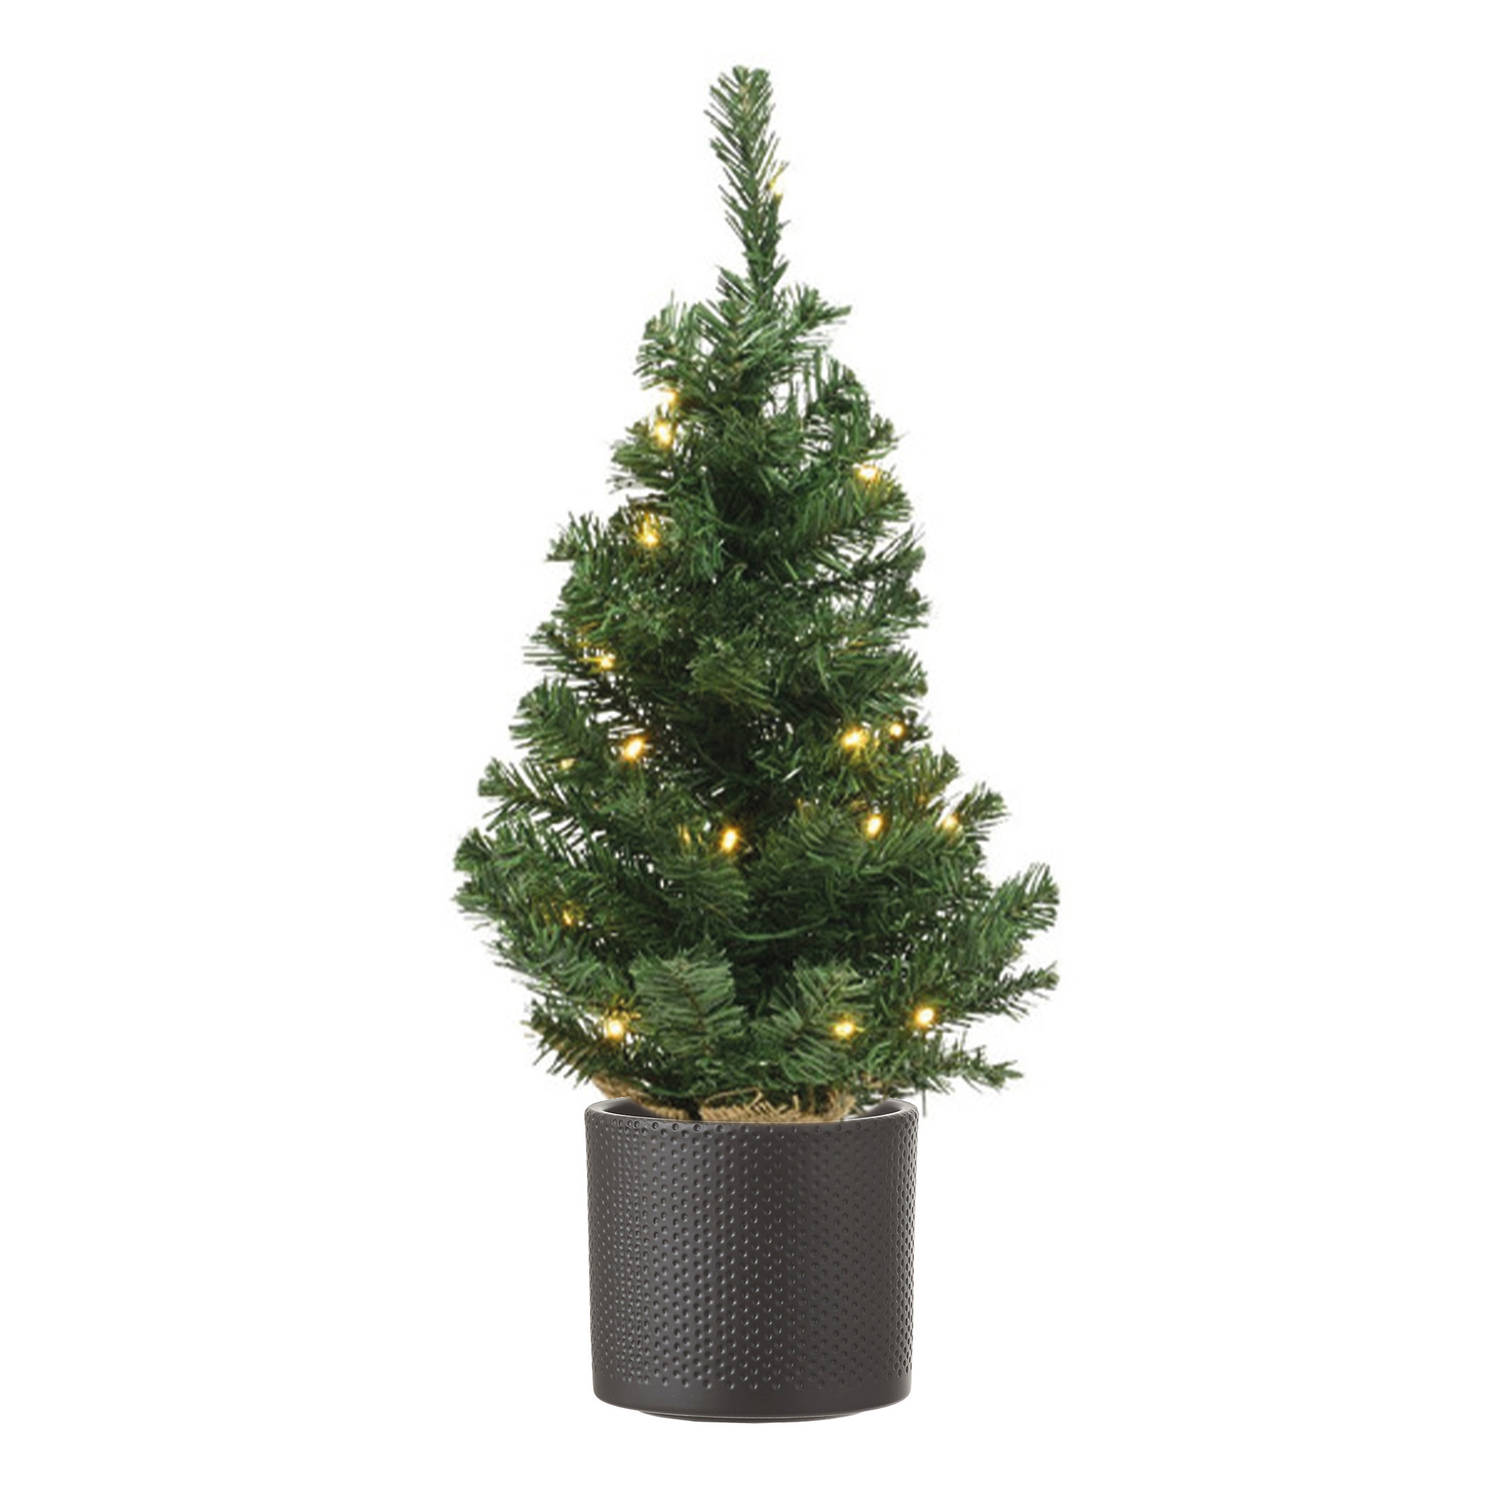 Volle mini kerstboom groen in jute zak met verlichting 60 cm en donkergrijze pot Kunstkerstboom